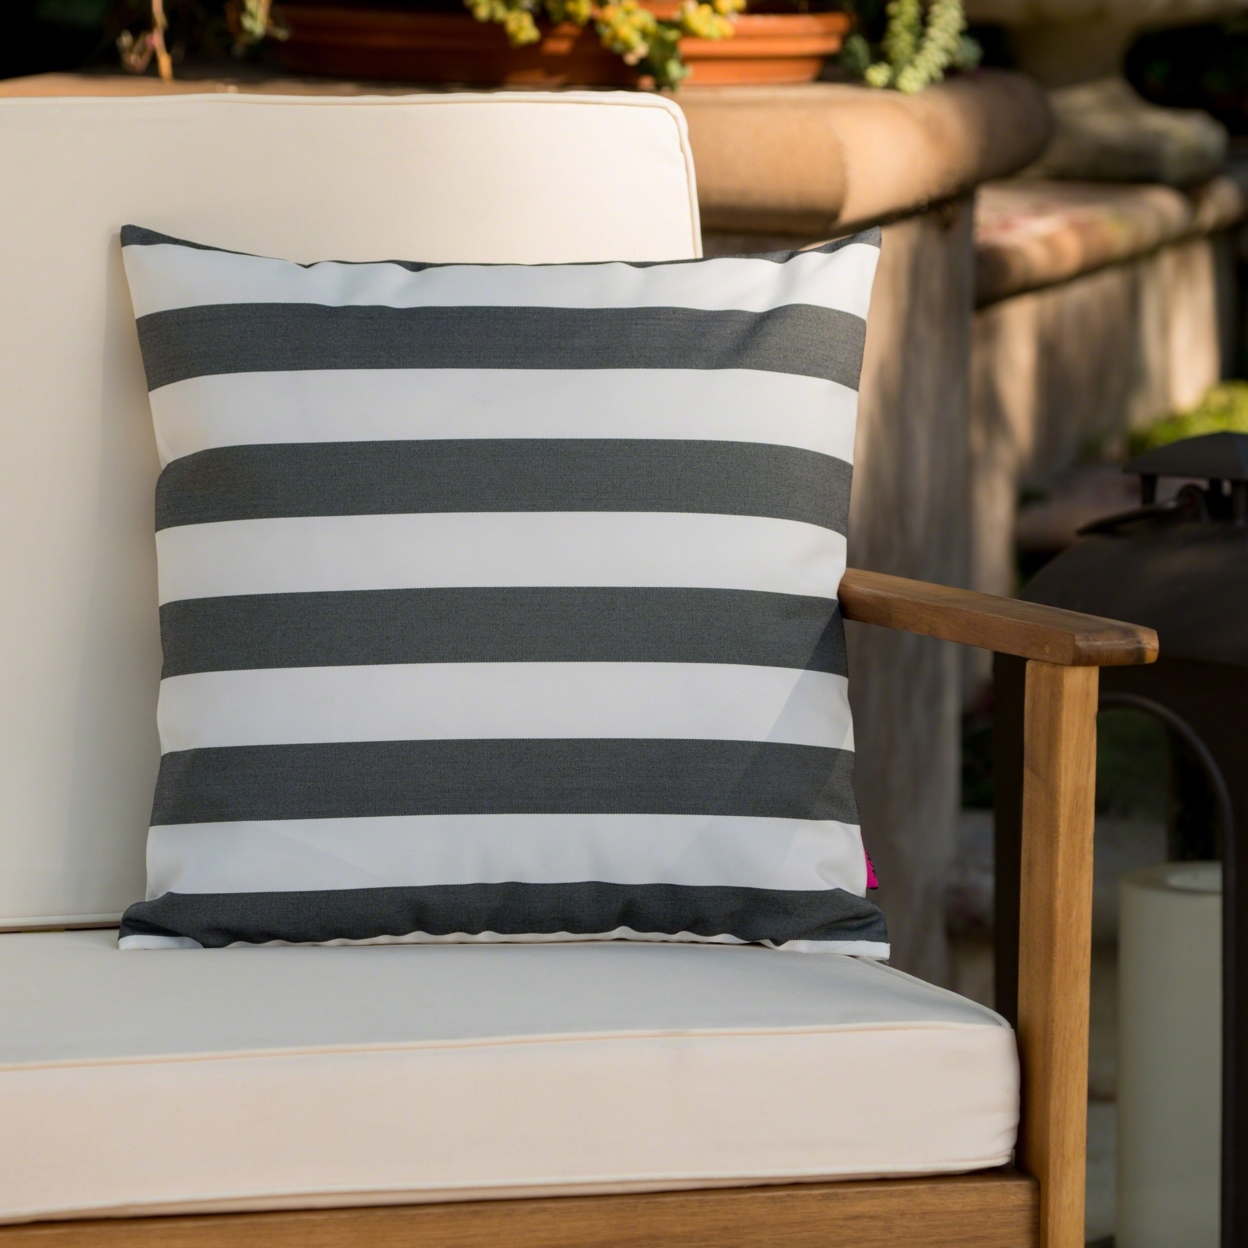 Coronado Outdoor Stripe Water Resistant Square Throw Pillow - Brown/white, Set Of 2